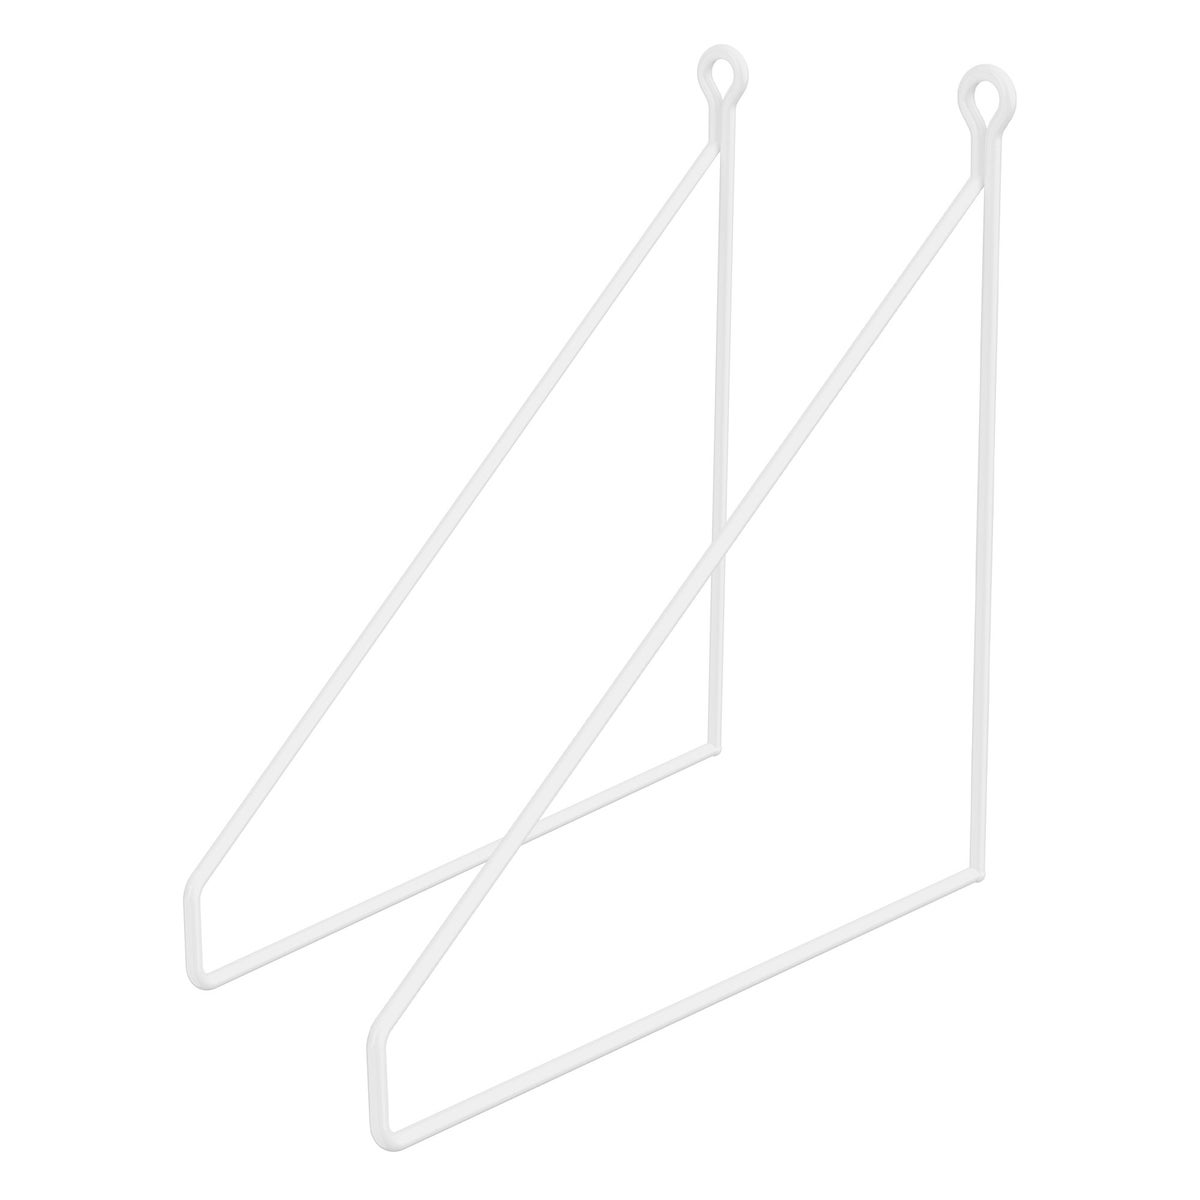 ML-Design 2 Stück Regalhalterung 250mm, Weiß, Metall, Dreieckige Regalhalterungen, Schwebe Regalwinkel, Draht Wandhalterung, Regalträger für Wandmontage, Wandregal Wandkonsole Hängeregal Regalstütze